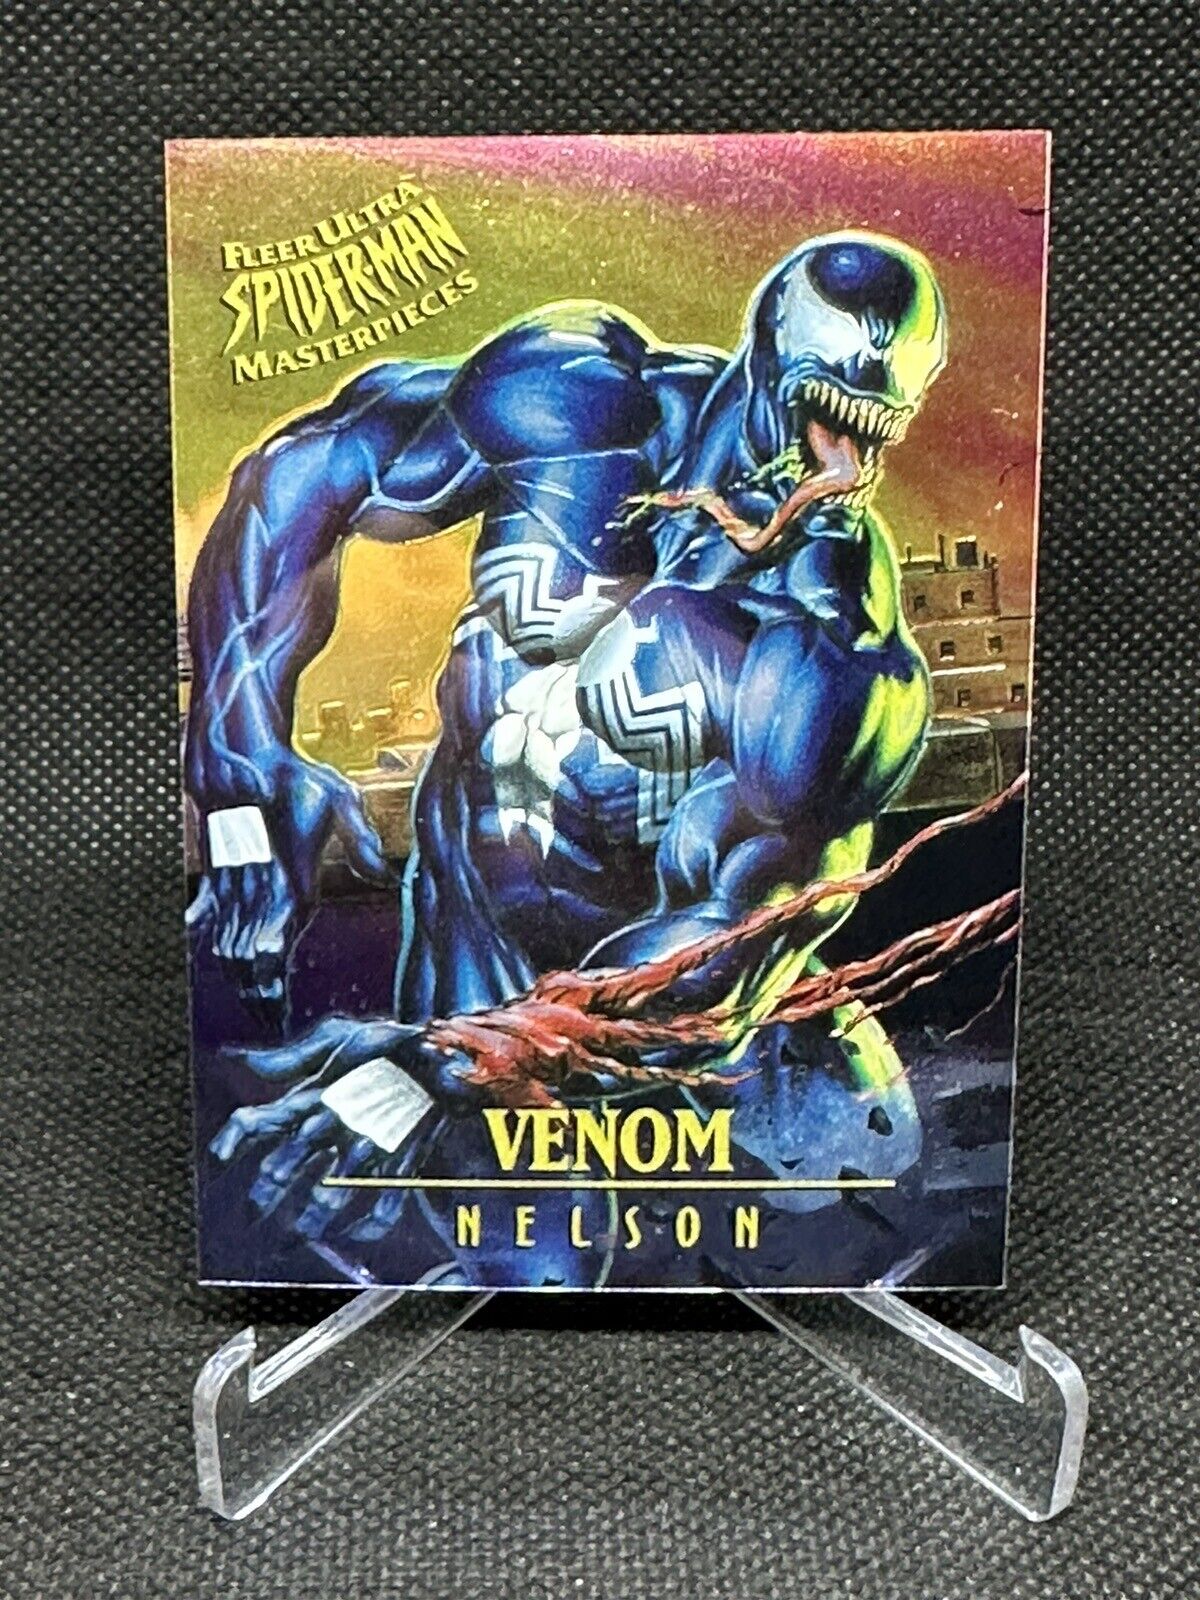 1995 Fleer Ultra Spiderman Masterpieces Venom 7/9 - Nelson